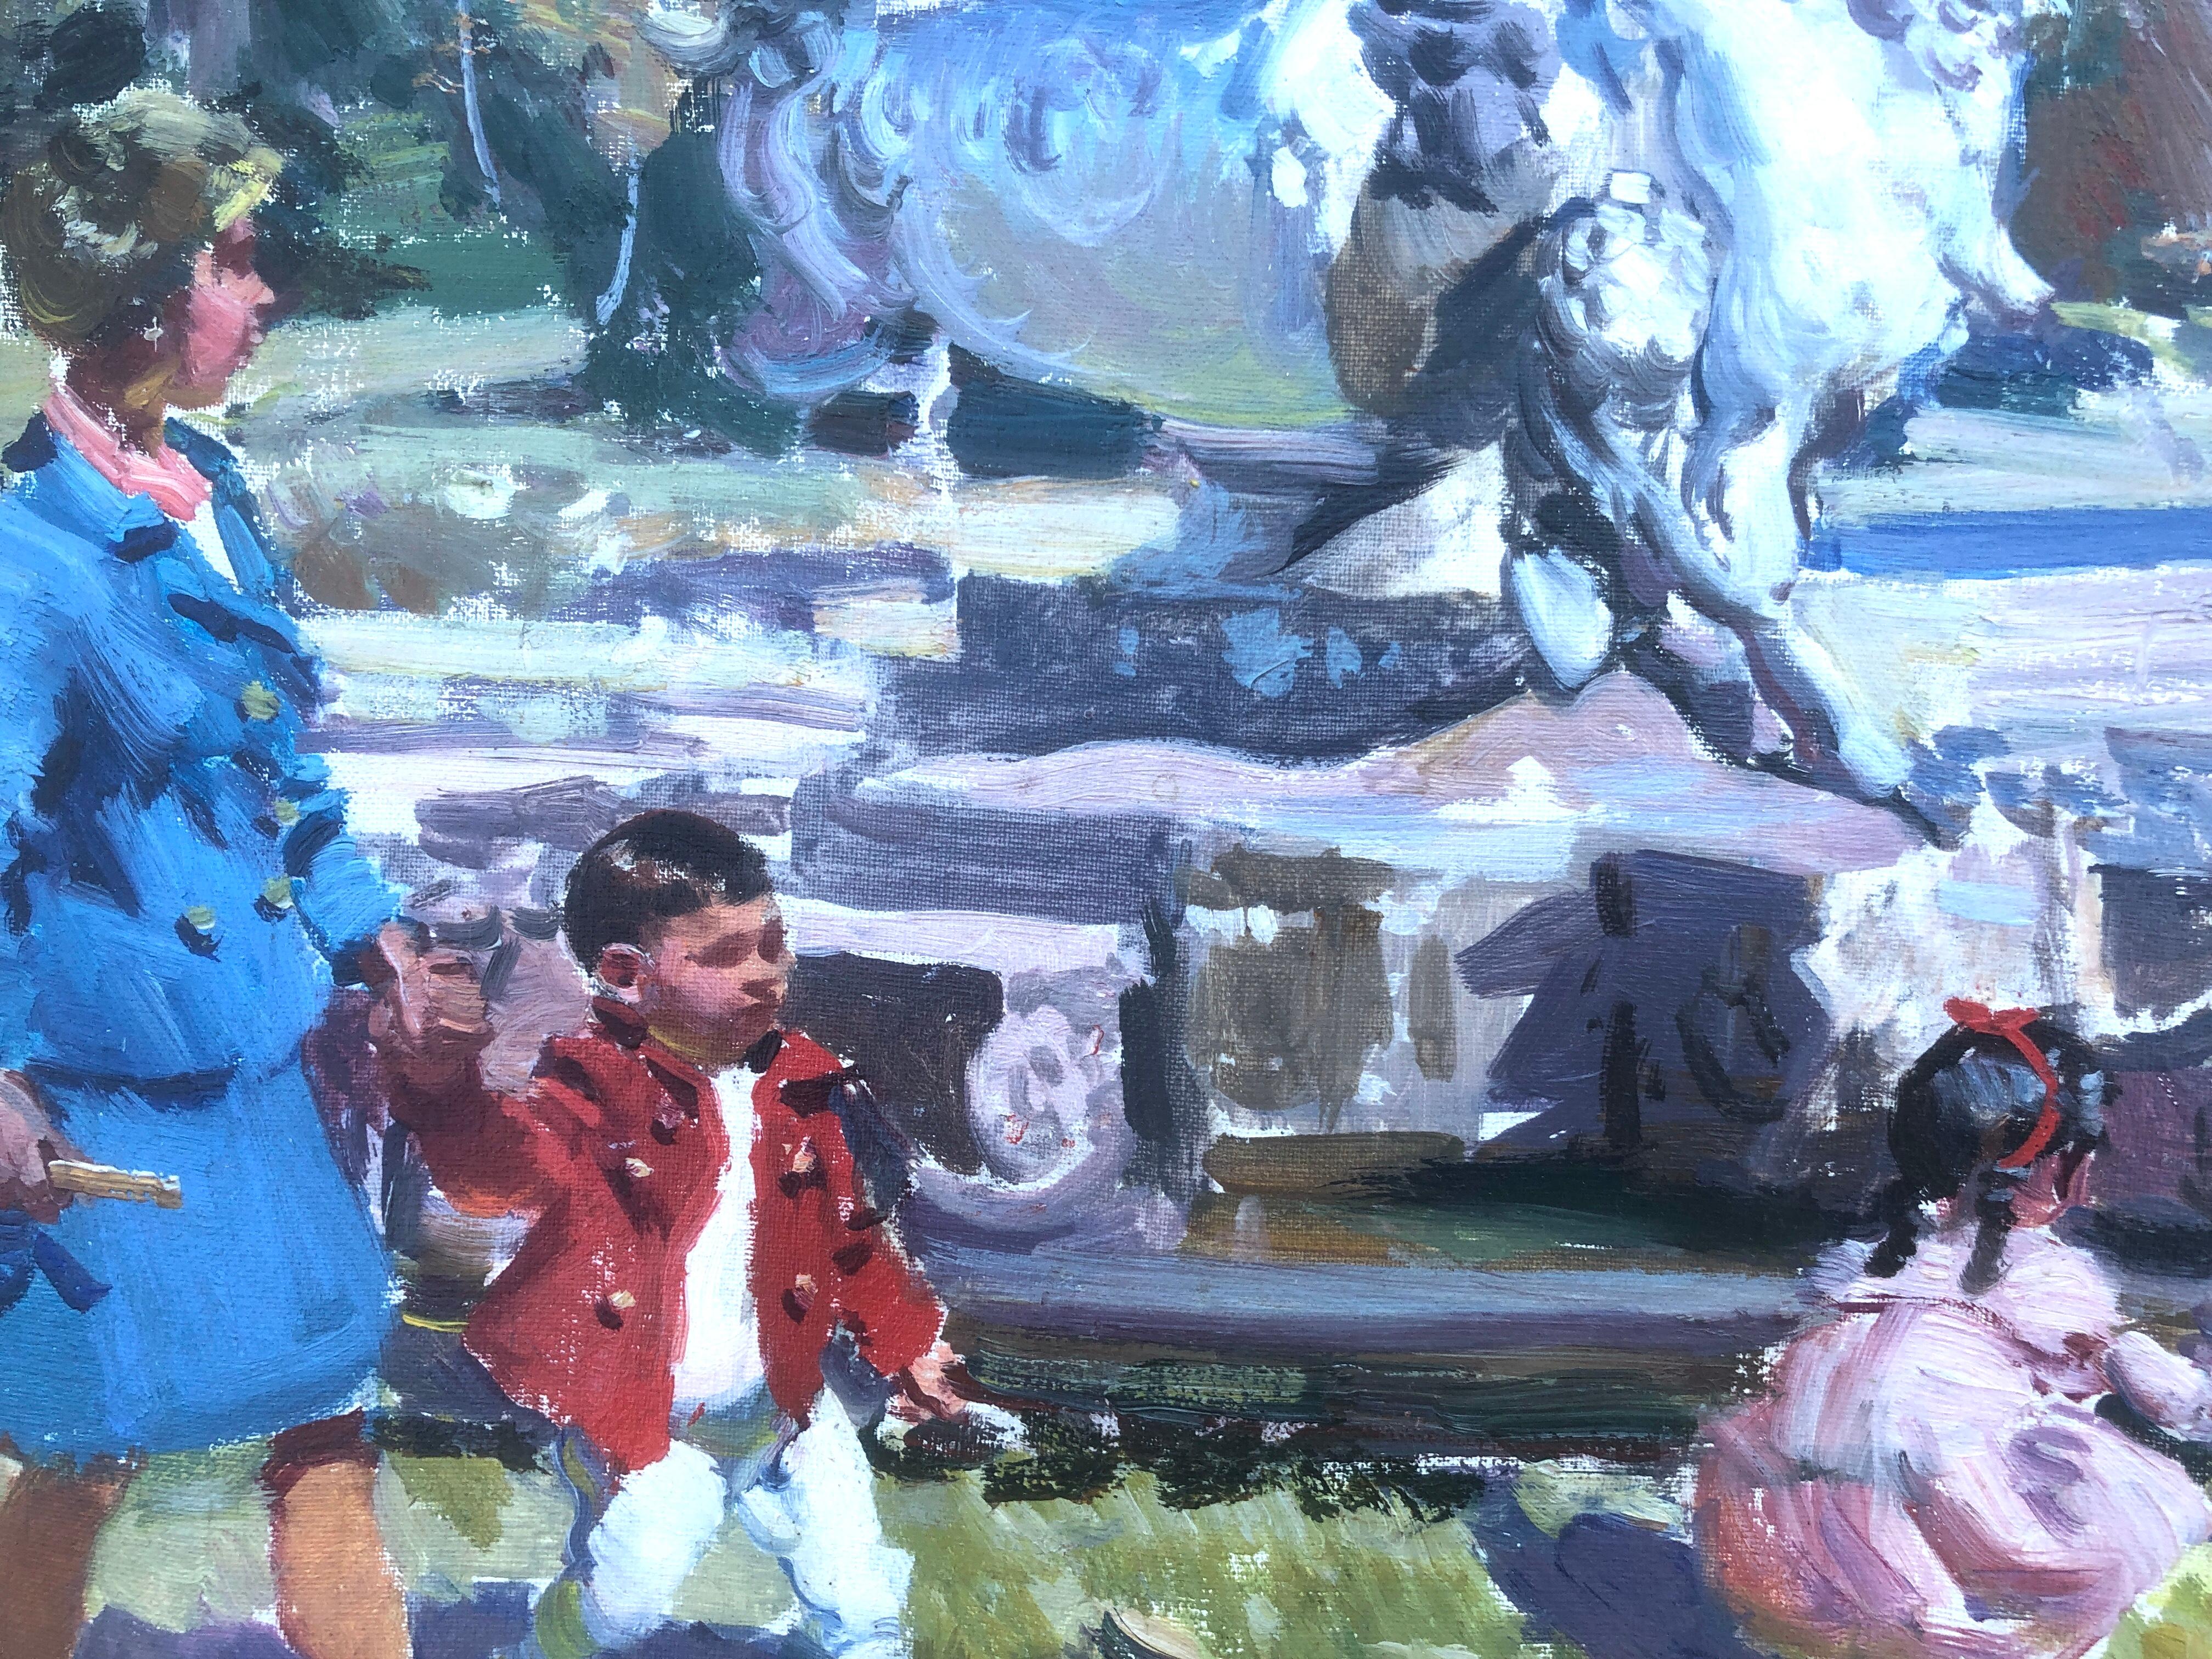 Ignacio Gil Sala (1913-2003) - Barcelone - Huile sur toile
L'huile mesure 38x46 cm.
Sans cadre.

Ignacio Gil Sala était un peintre, un personnage bohème, un voyageur aventureux et intrépide qui savait capter son regard sur ce monde avec sa peinture.